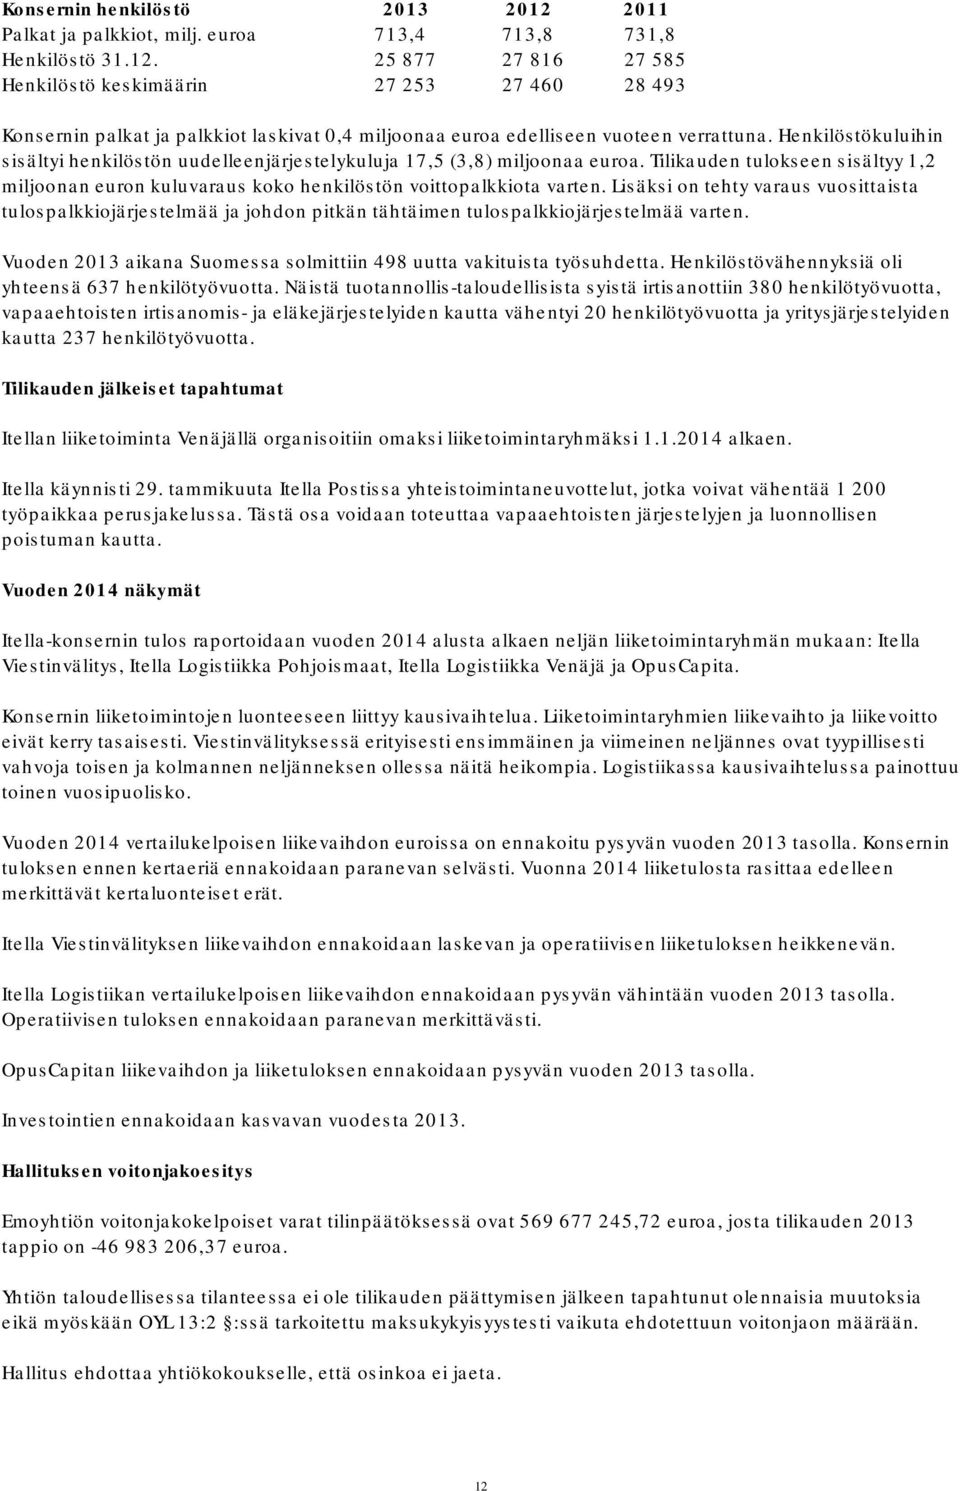 Lisäksi on tehty varaus vuosittaista tulospalkkiojärjestelmää ja johdon pitkän tähtäimen tulospalkkiojärjestelmää varten. Vuoden 2013 aikana Suomessa solmittiin 498 uutta vakituista työsuhdetta.